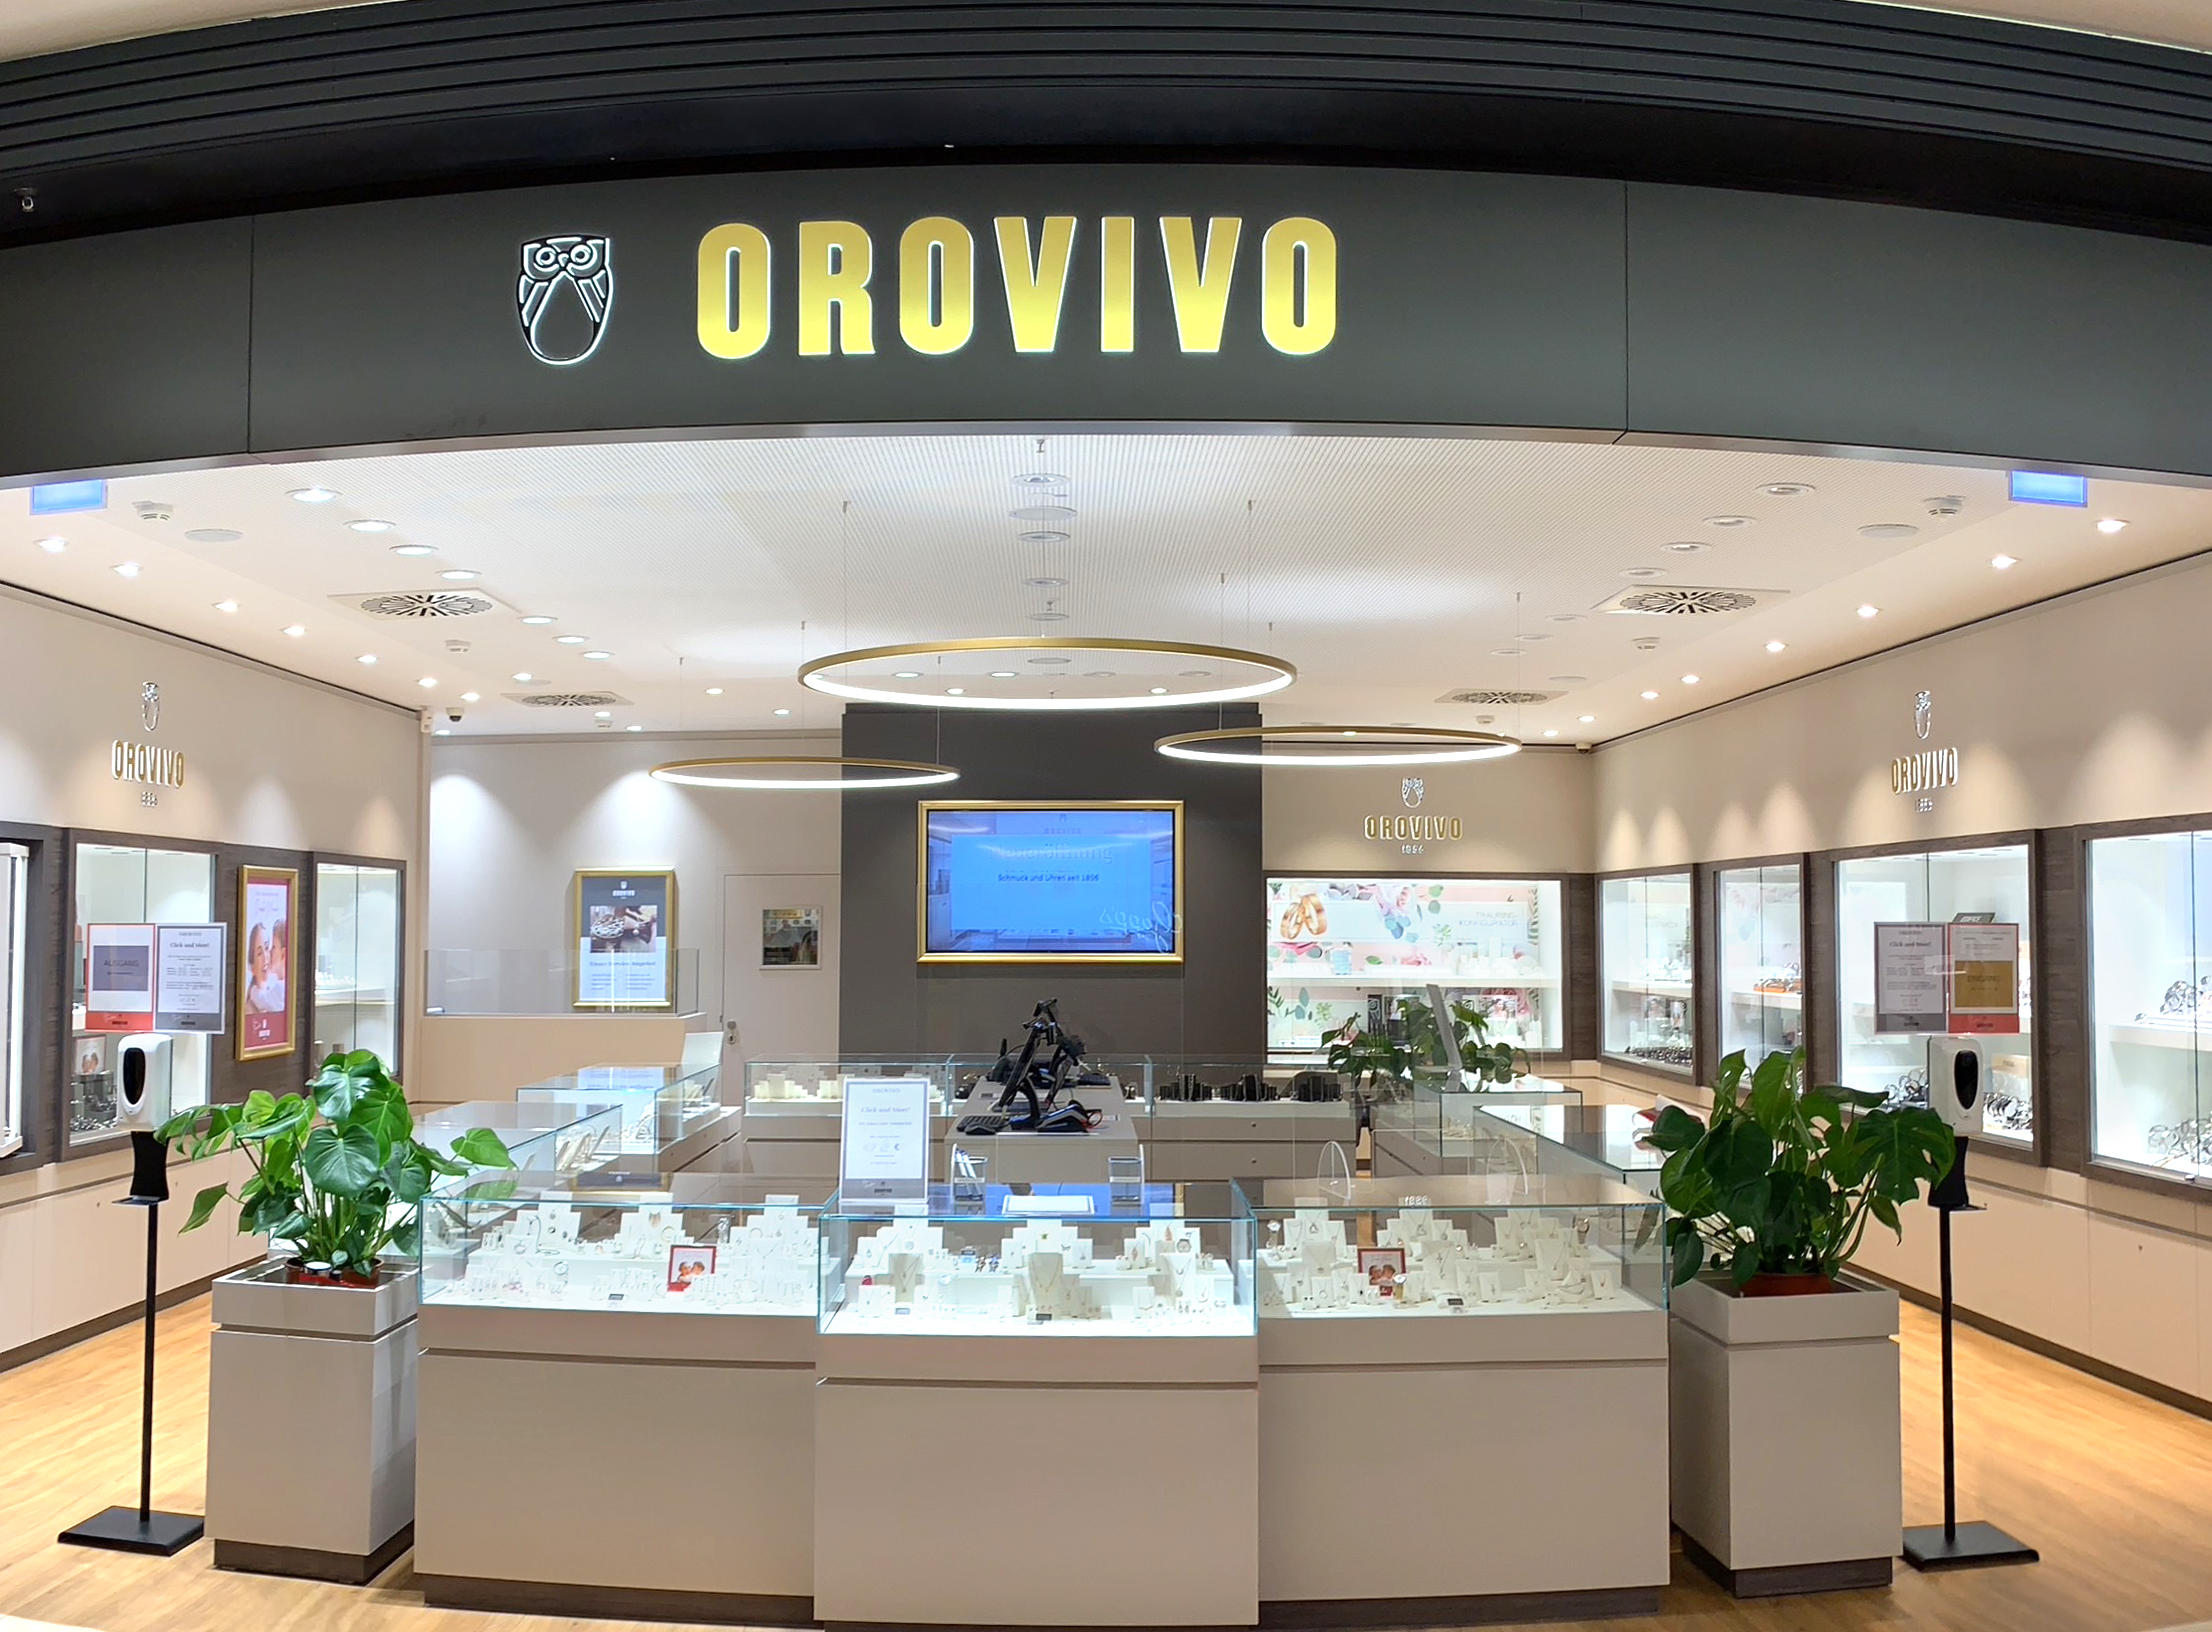 OROVIVO  - Dein Juwelier, Willy-Brandt-Platz 5 in München